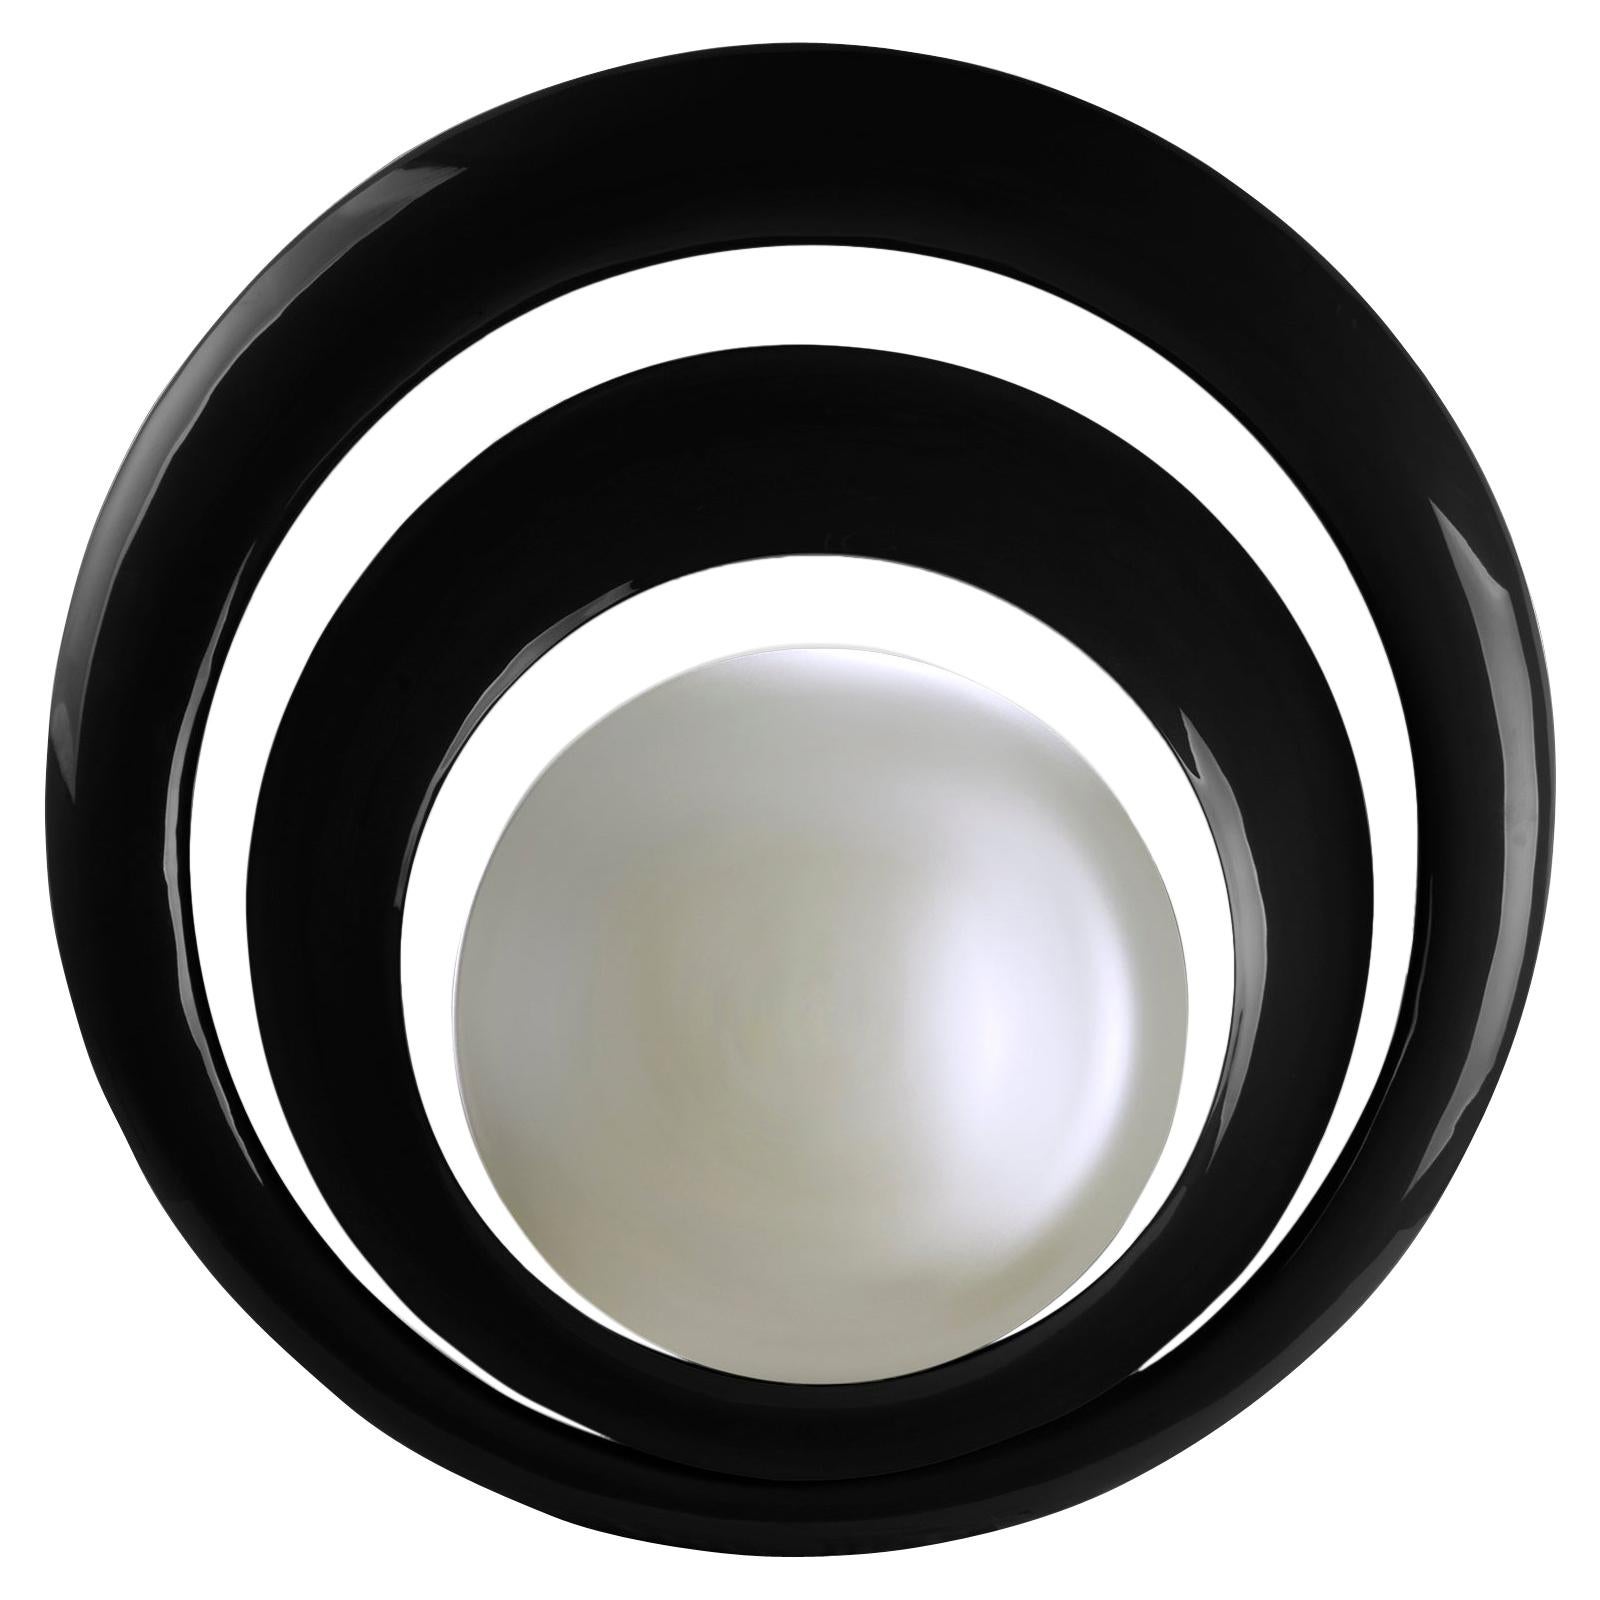 Serail, runder Spiegel in schwarz lackierter Oberfläche